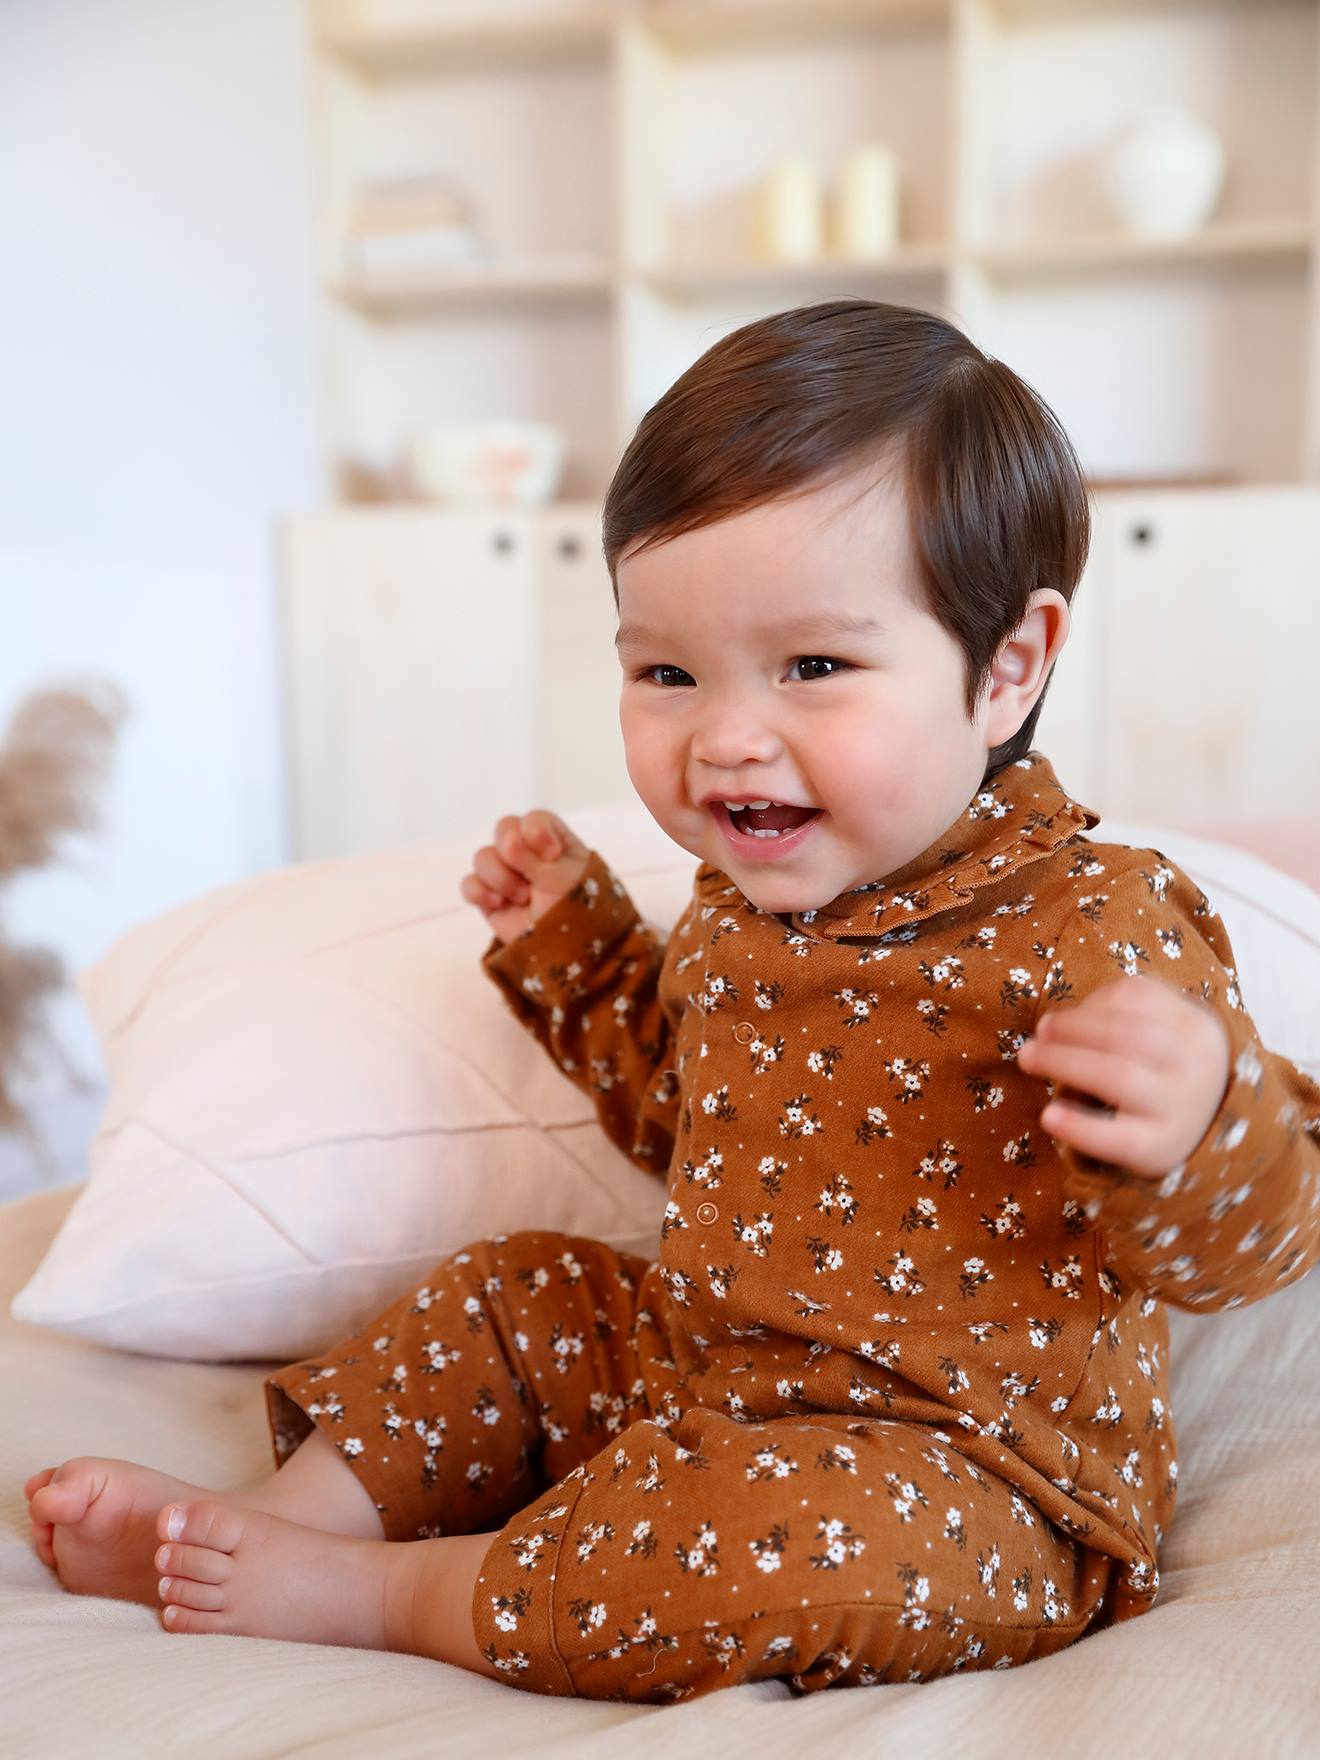 Pyjama bébé Molleton - Dors-bien pour bébé fille et garçon - vertbaudet